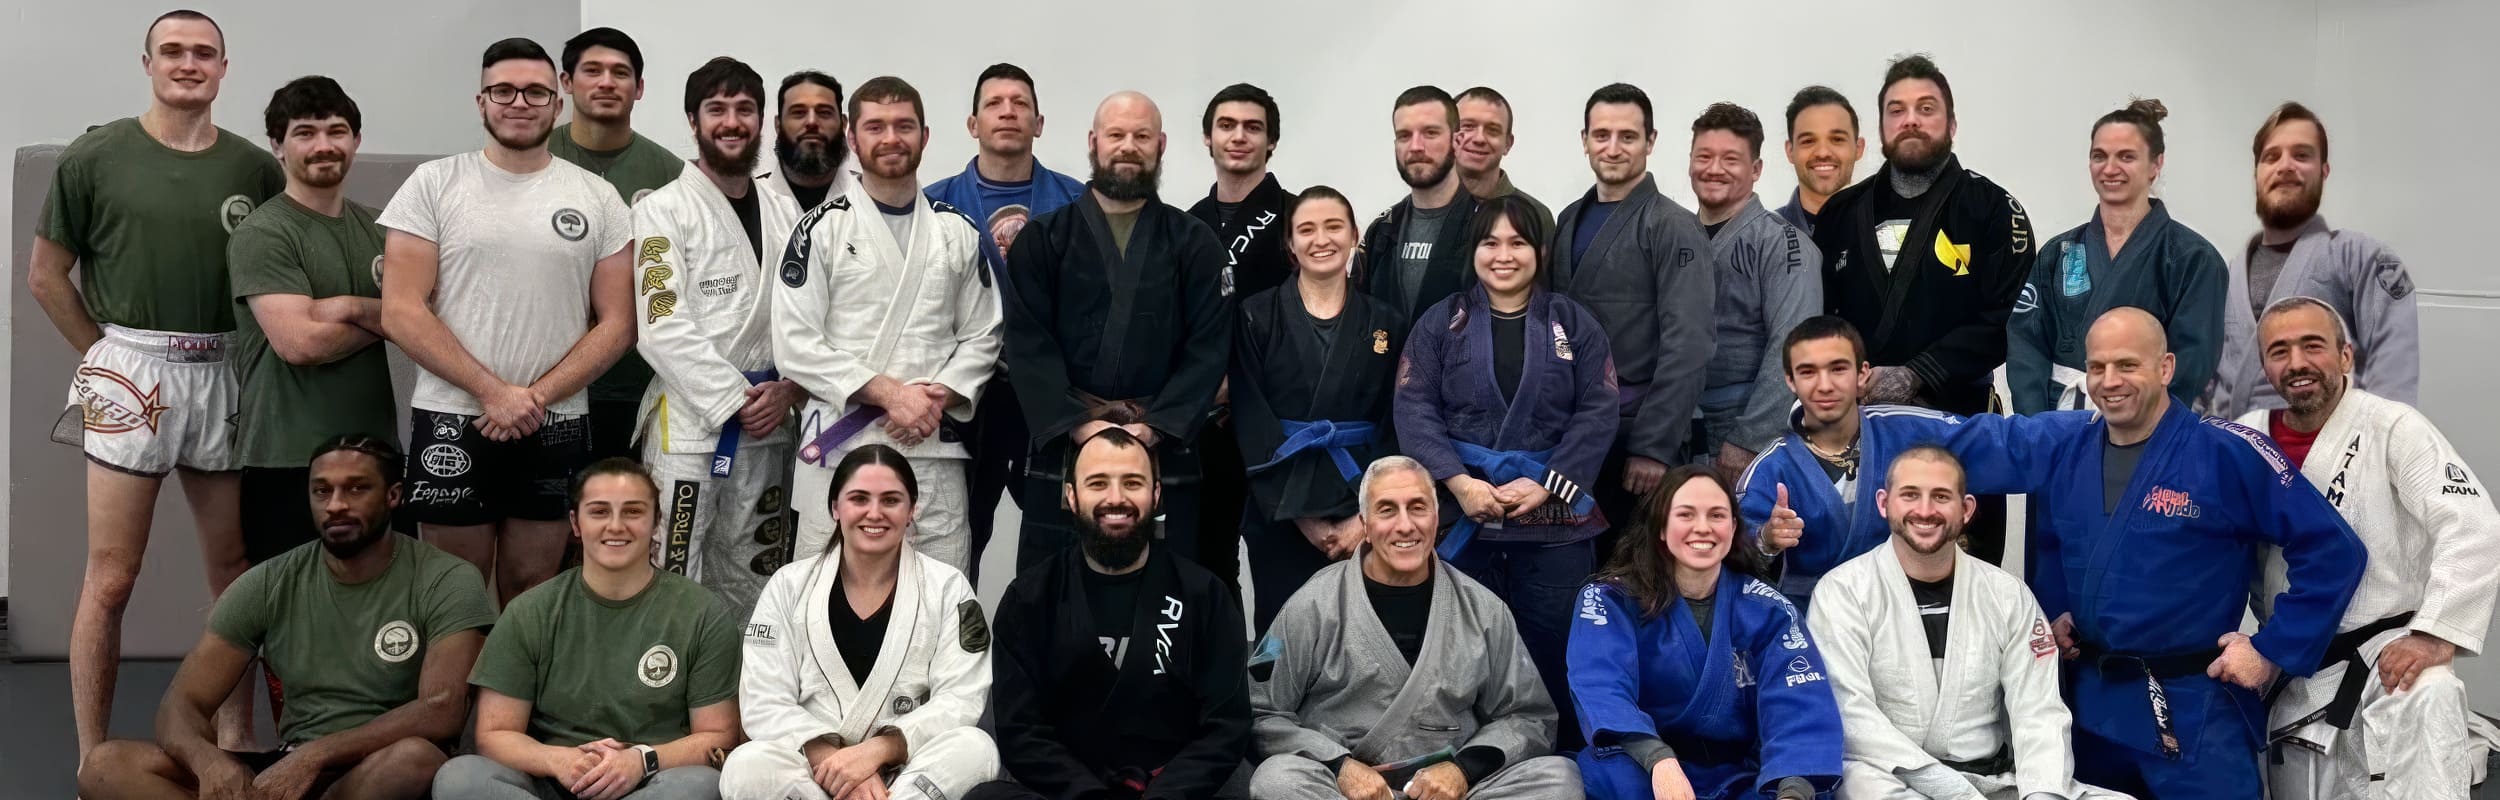 instructors at GoodTree MMA group photo